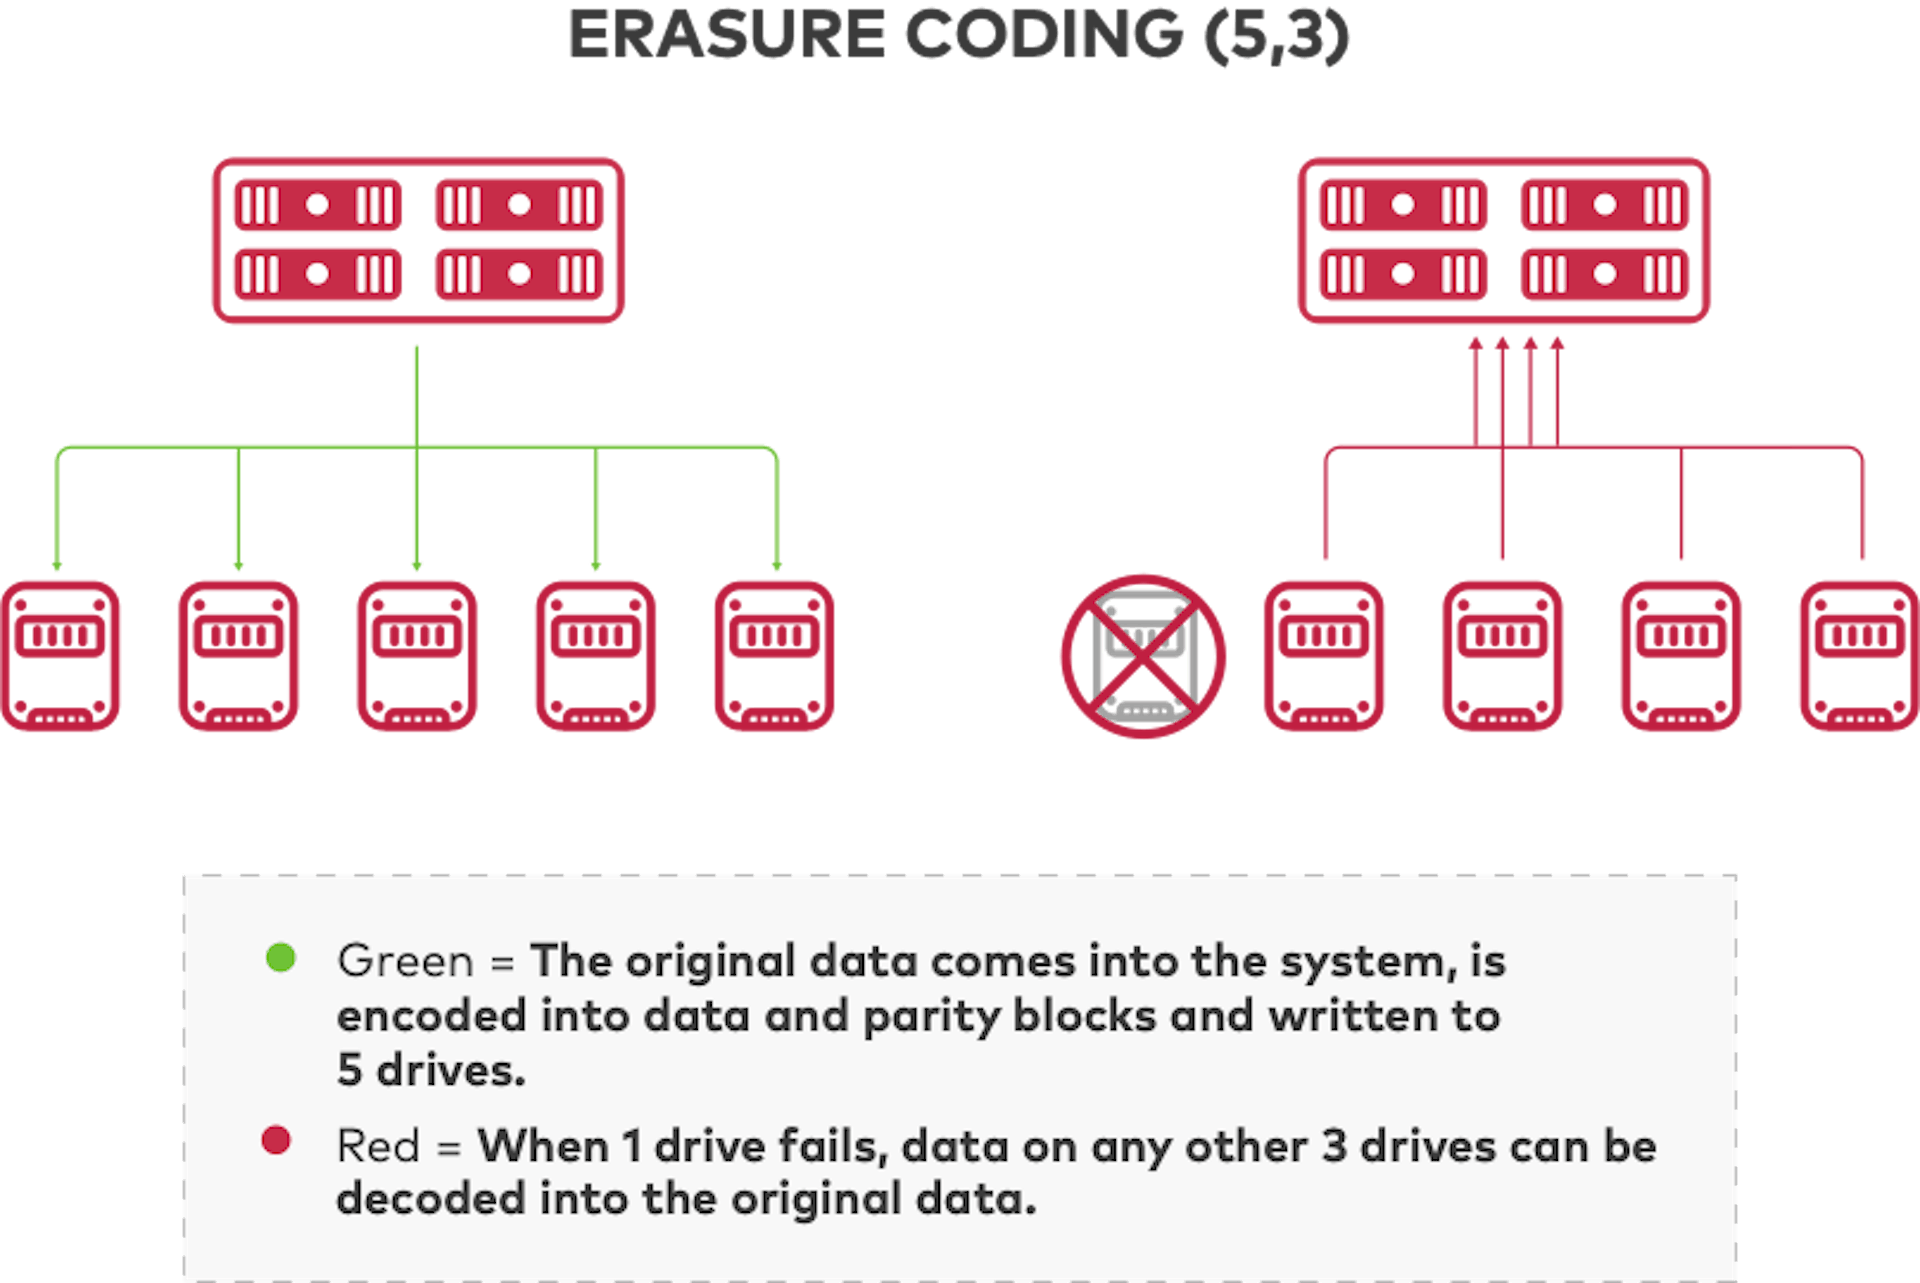 La codificación de borrado divide los datos y la paridad entre unidades.